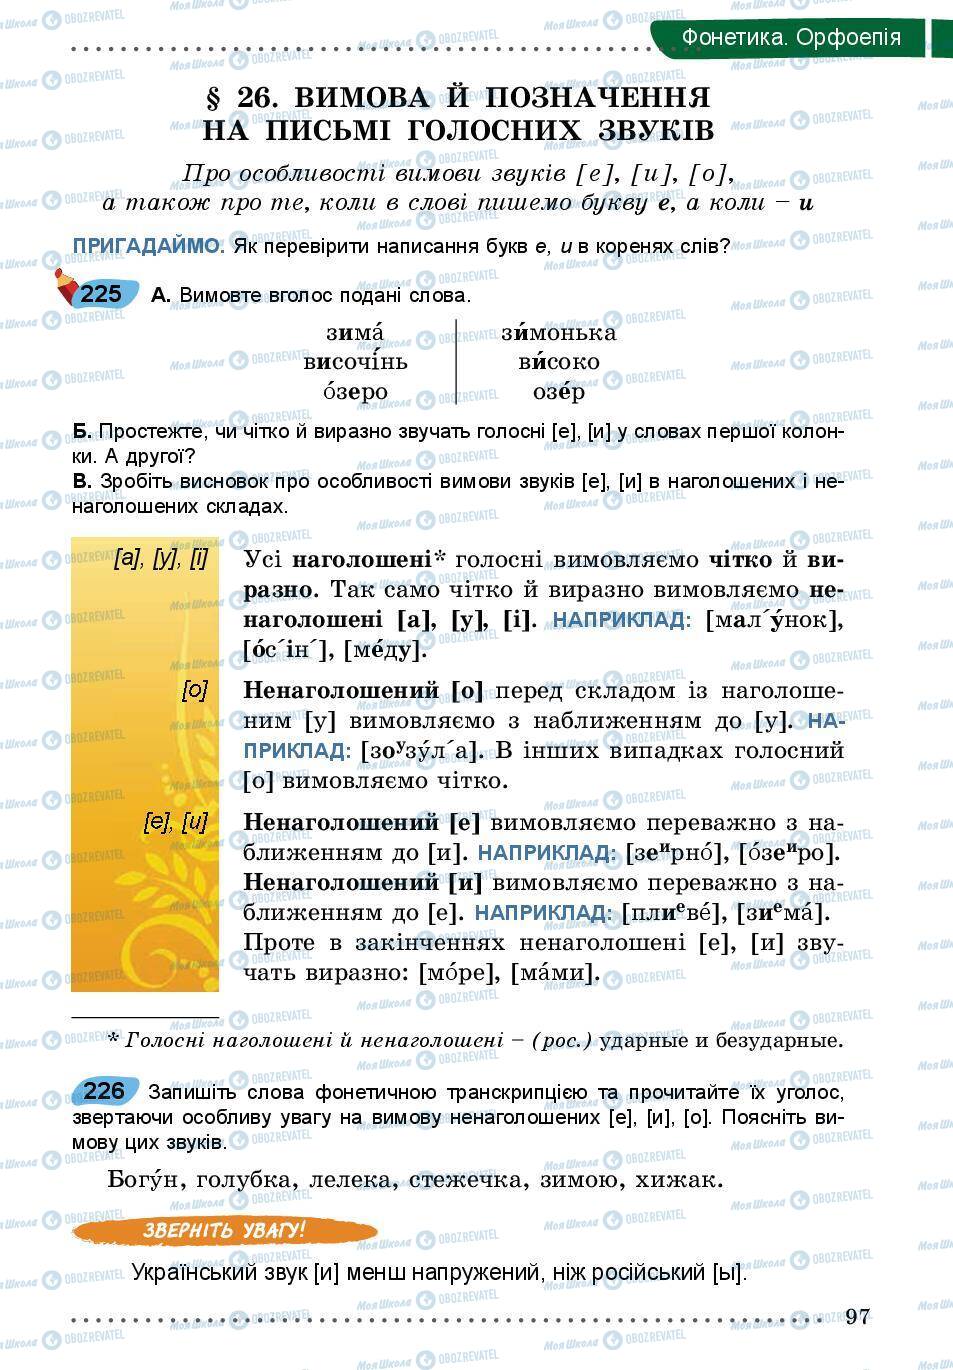 Підручники Українська мова 5 клас сторінка 97